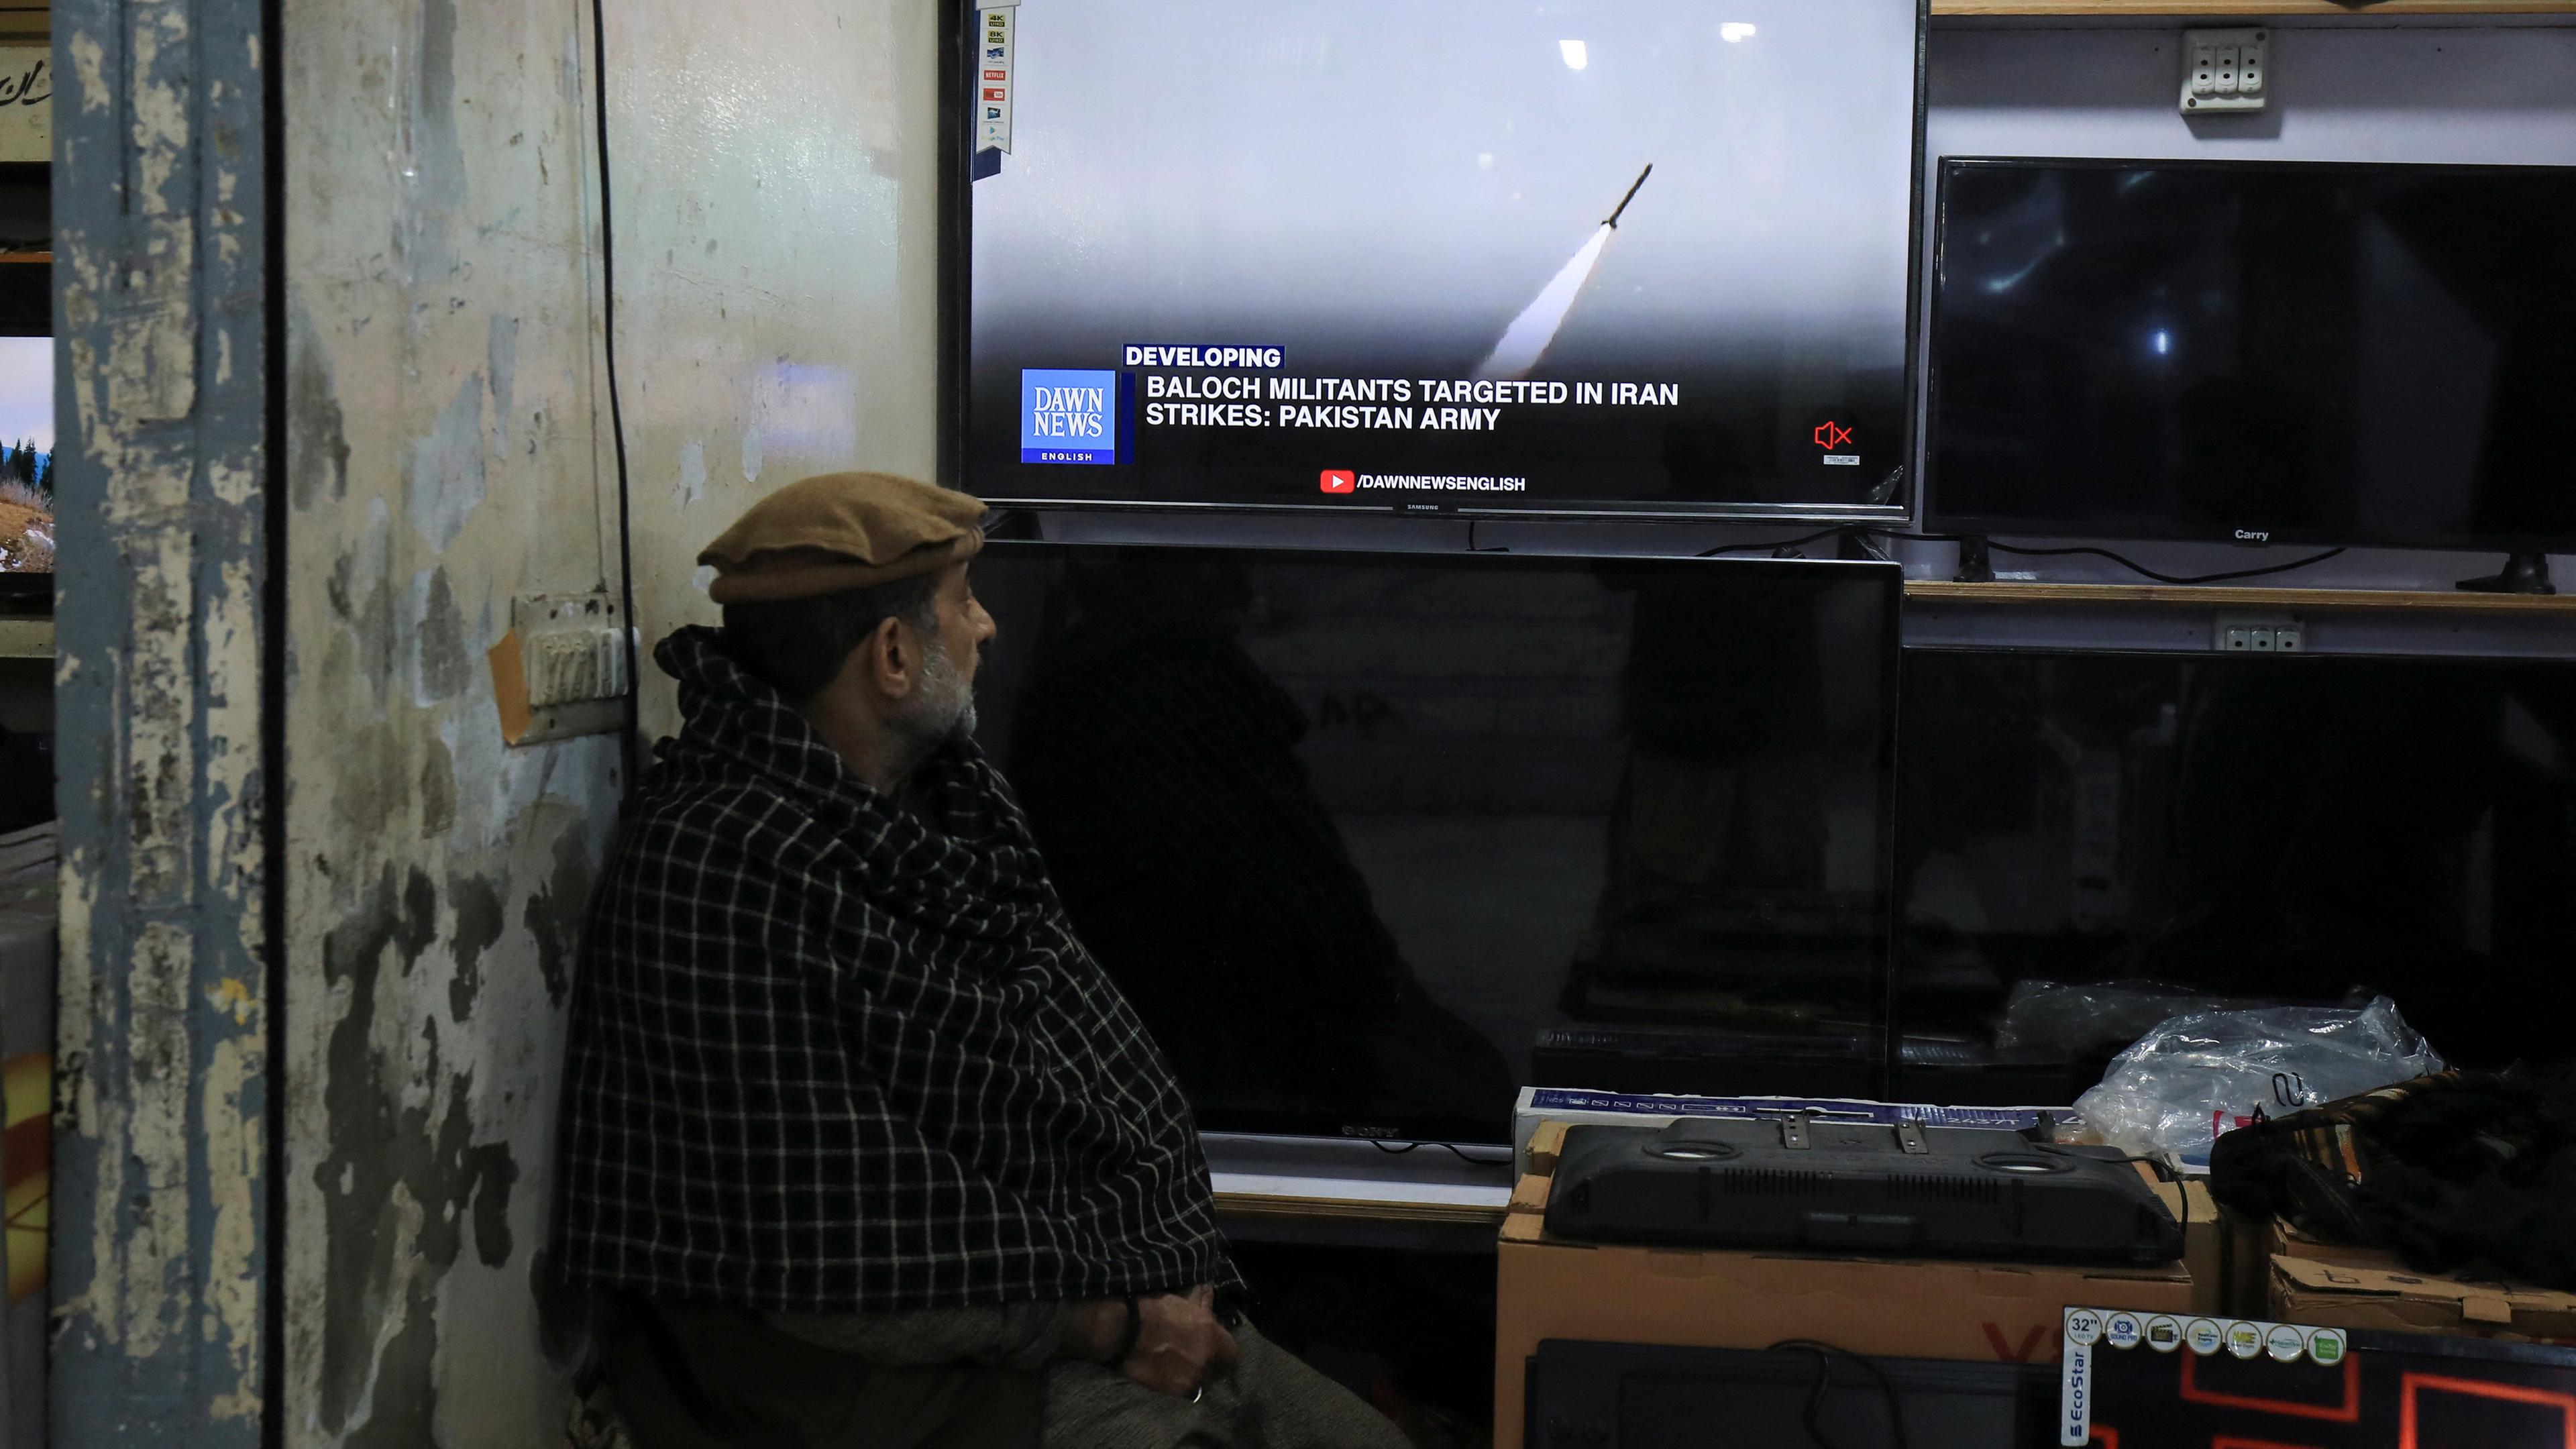 Ein Mann sieht einen Nachrichtensender im Fernsehen in einem Geschäft, nachdem das pakistanische Außenministerium sagte, das Land habe Angriffe im Iran gegen militante Separatisten durchgeführt